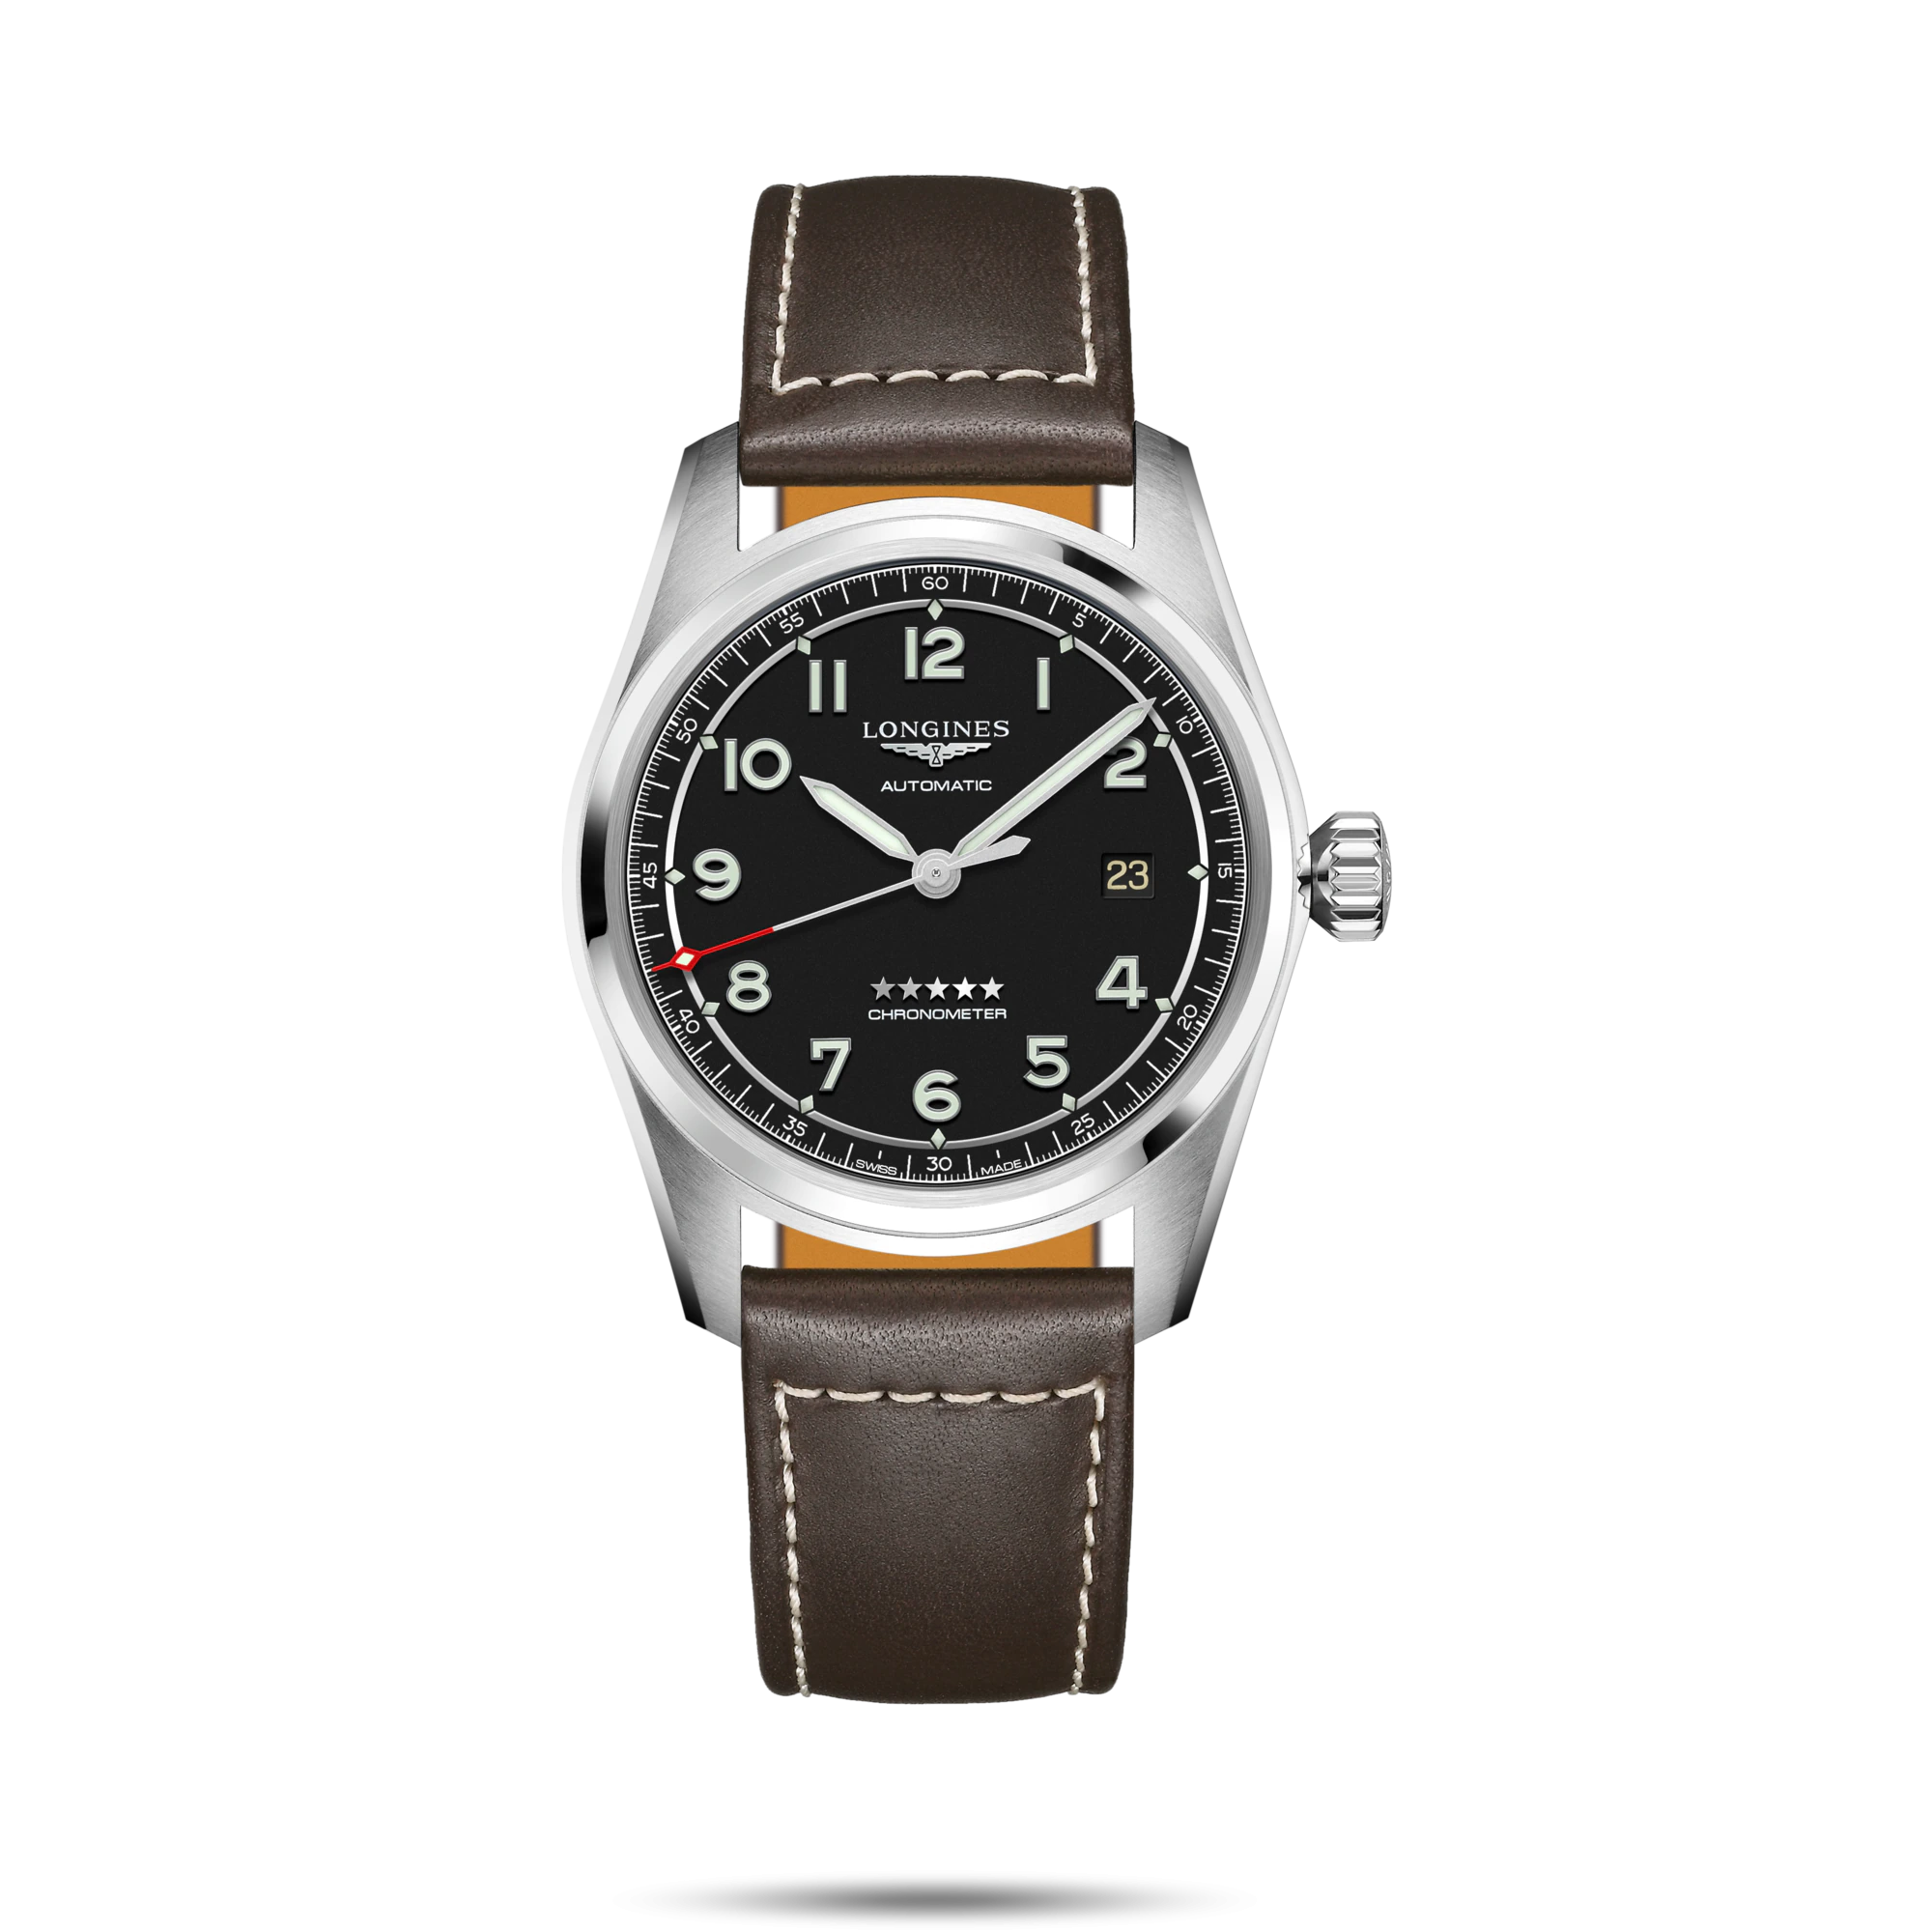 ساعت لونژین مدل L3.810.4.53.0